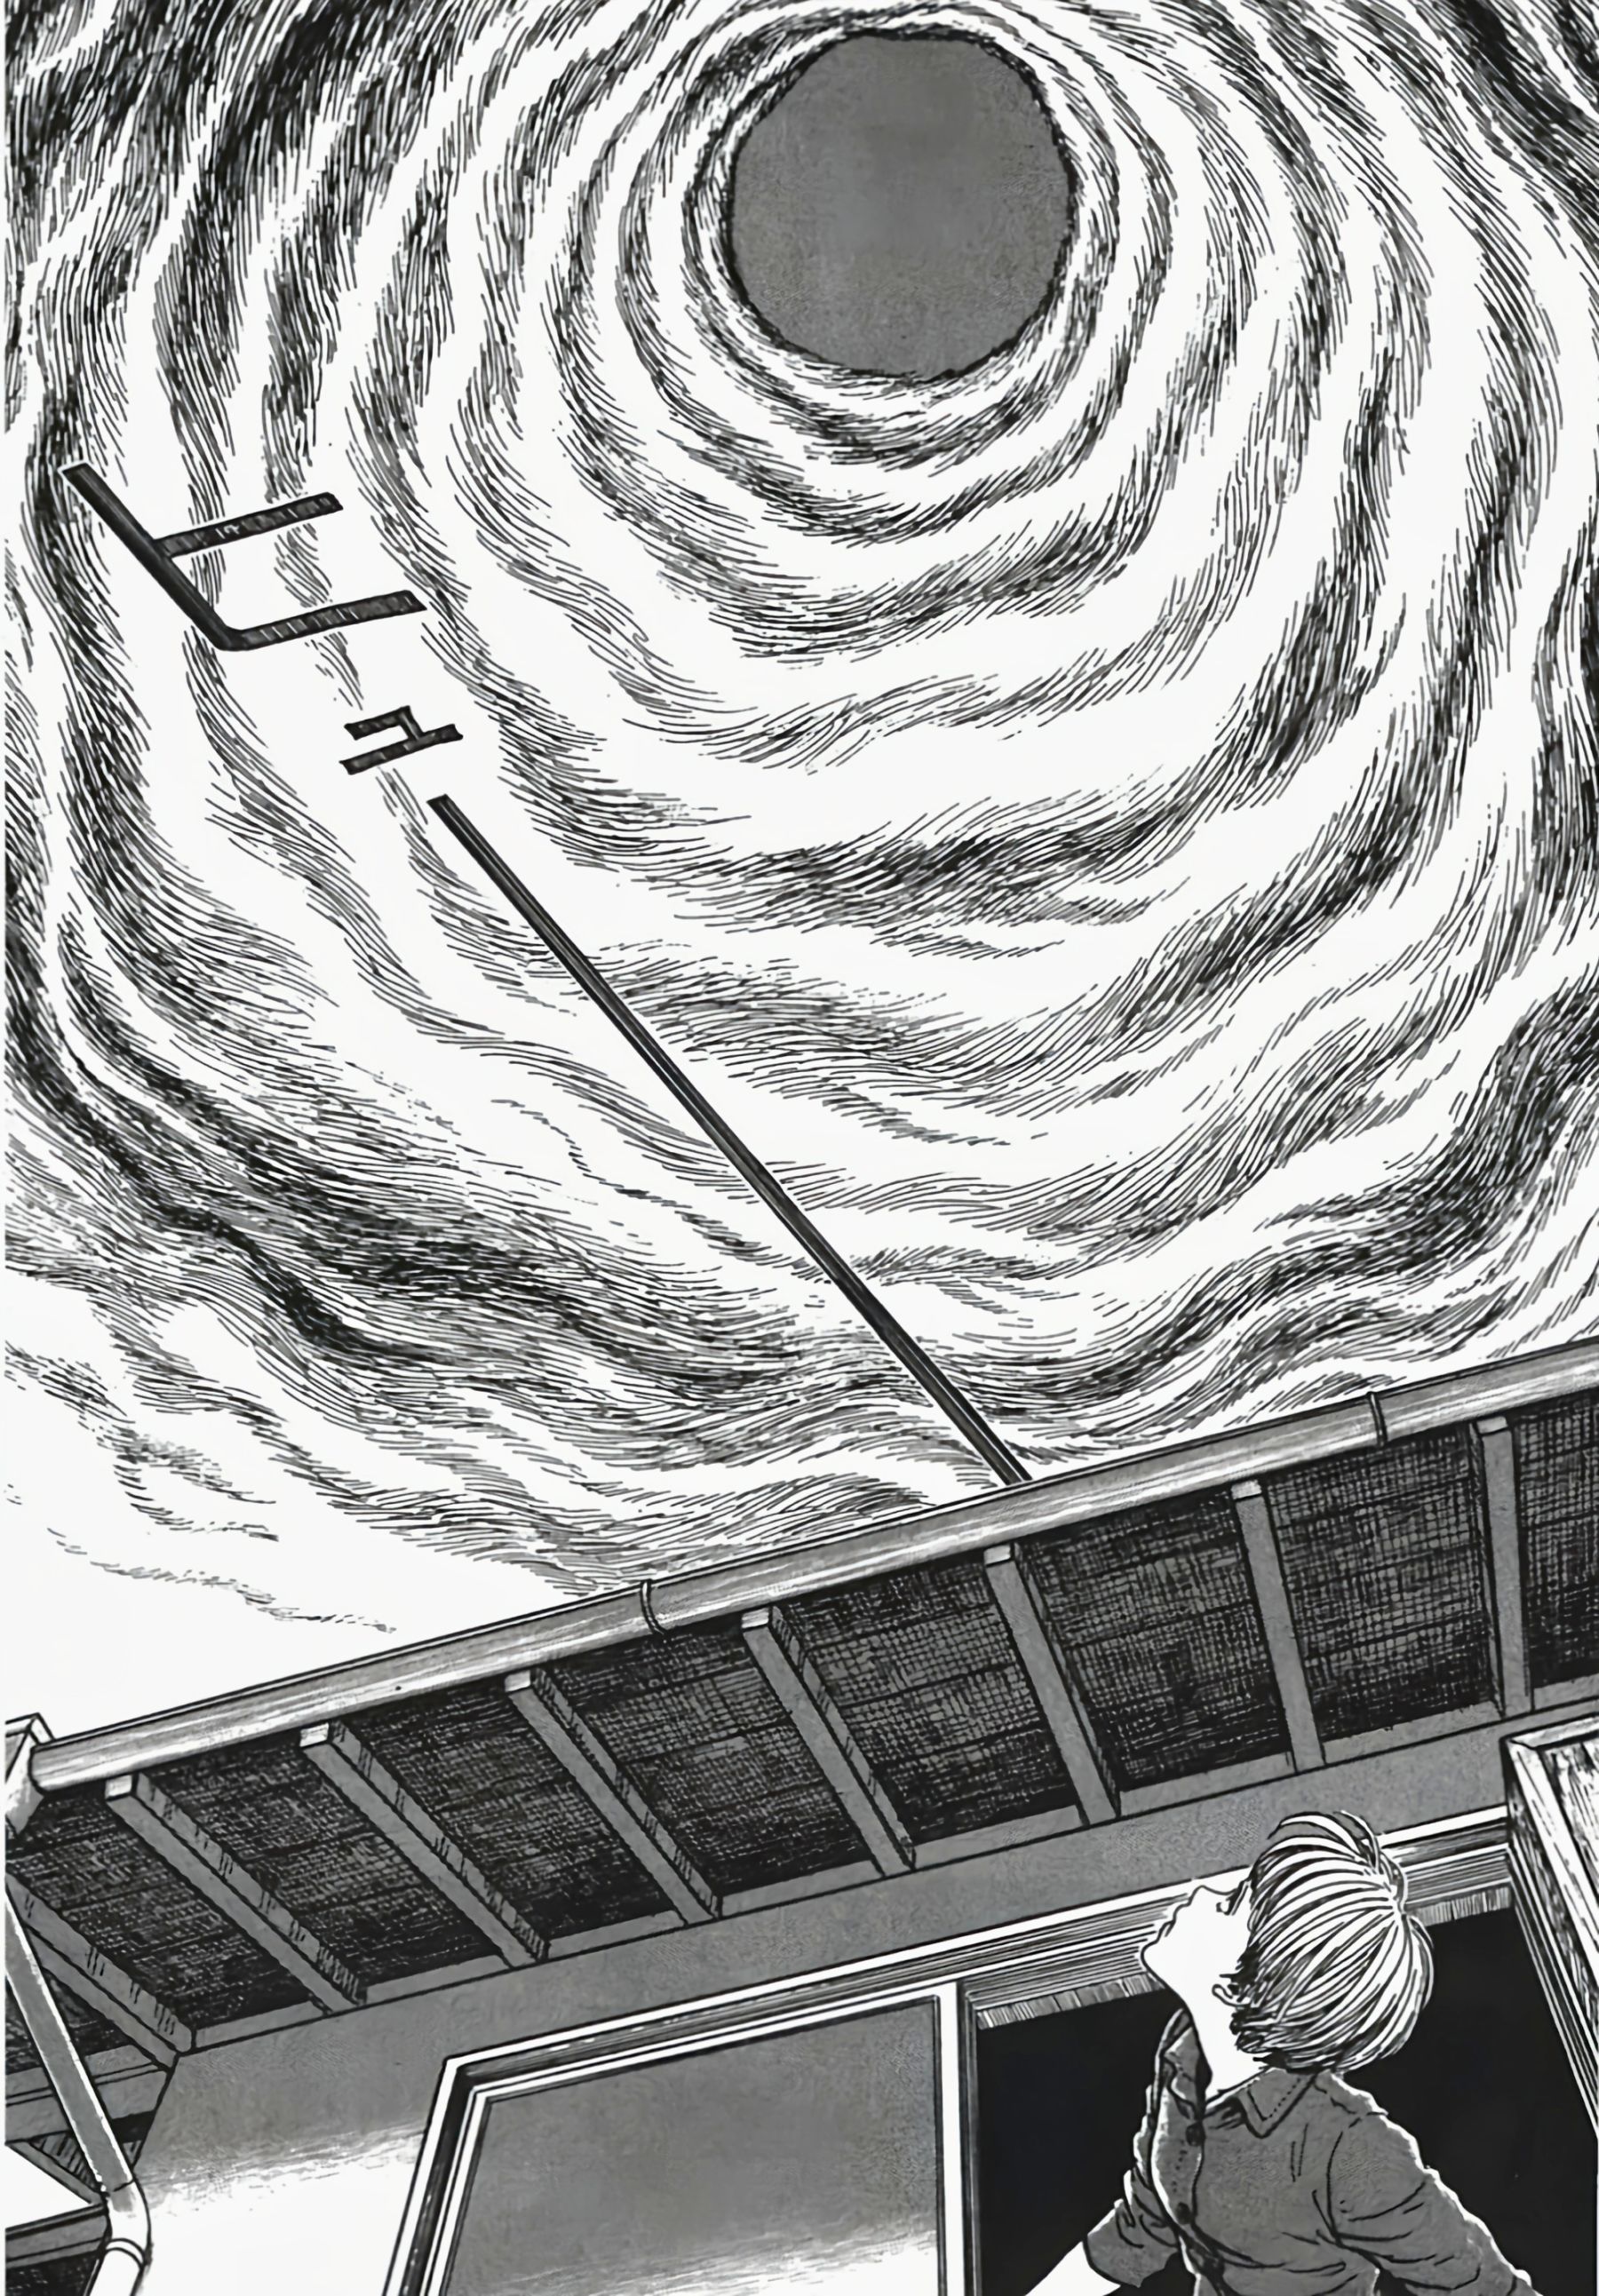 【影視動漫】伊藤潤二的恐怖漫畫《漩渦》-第16張